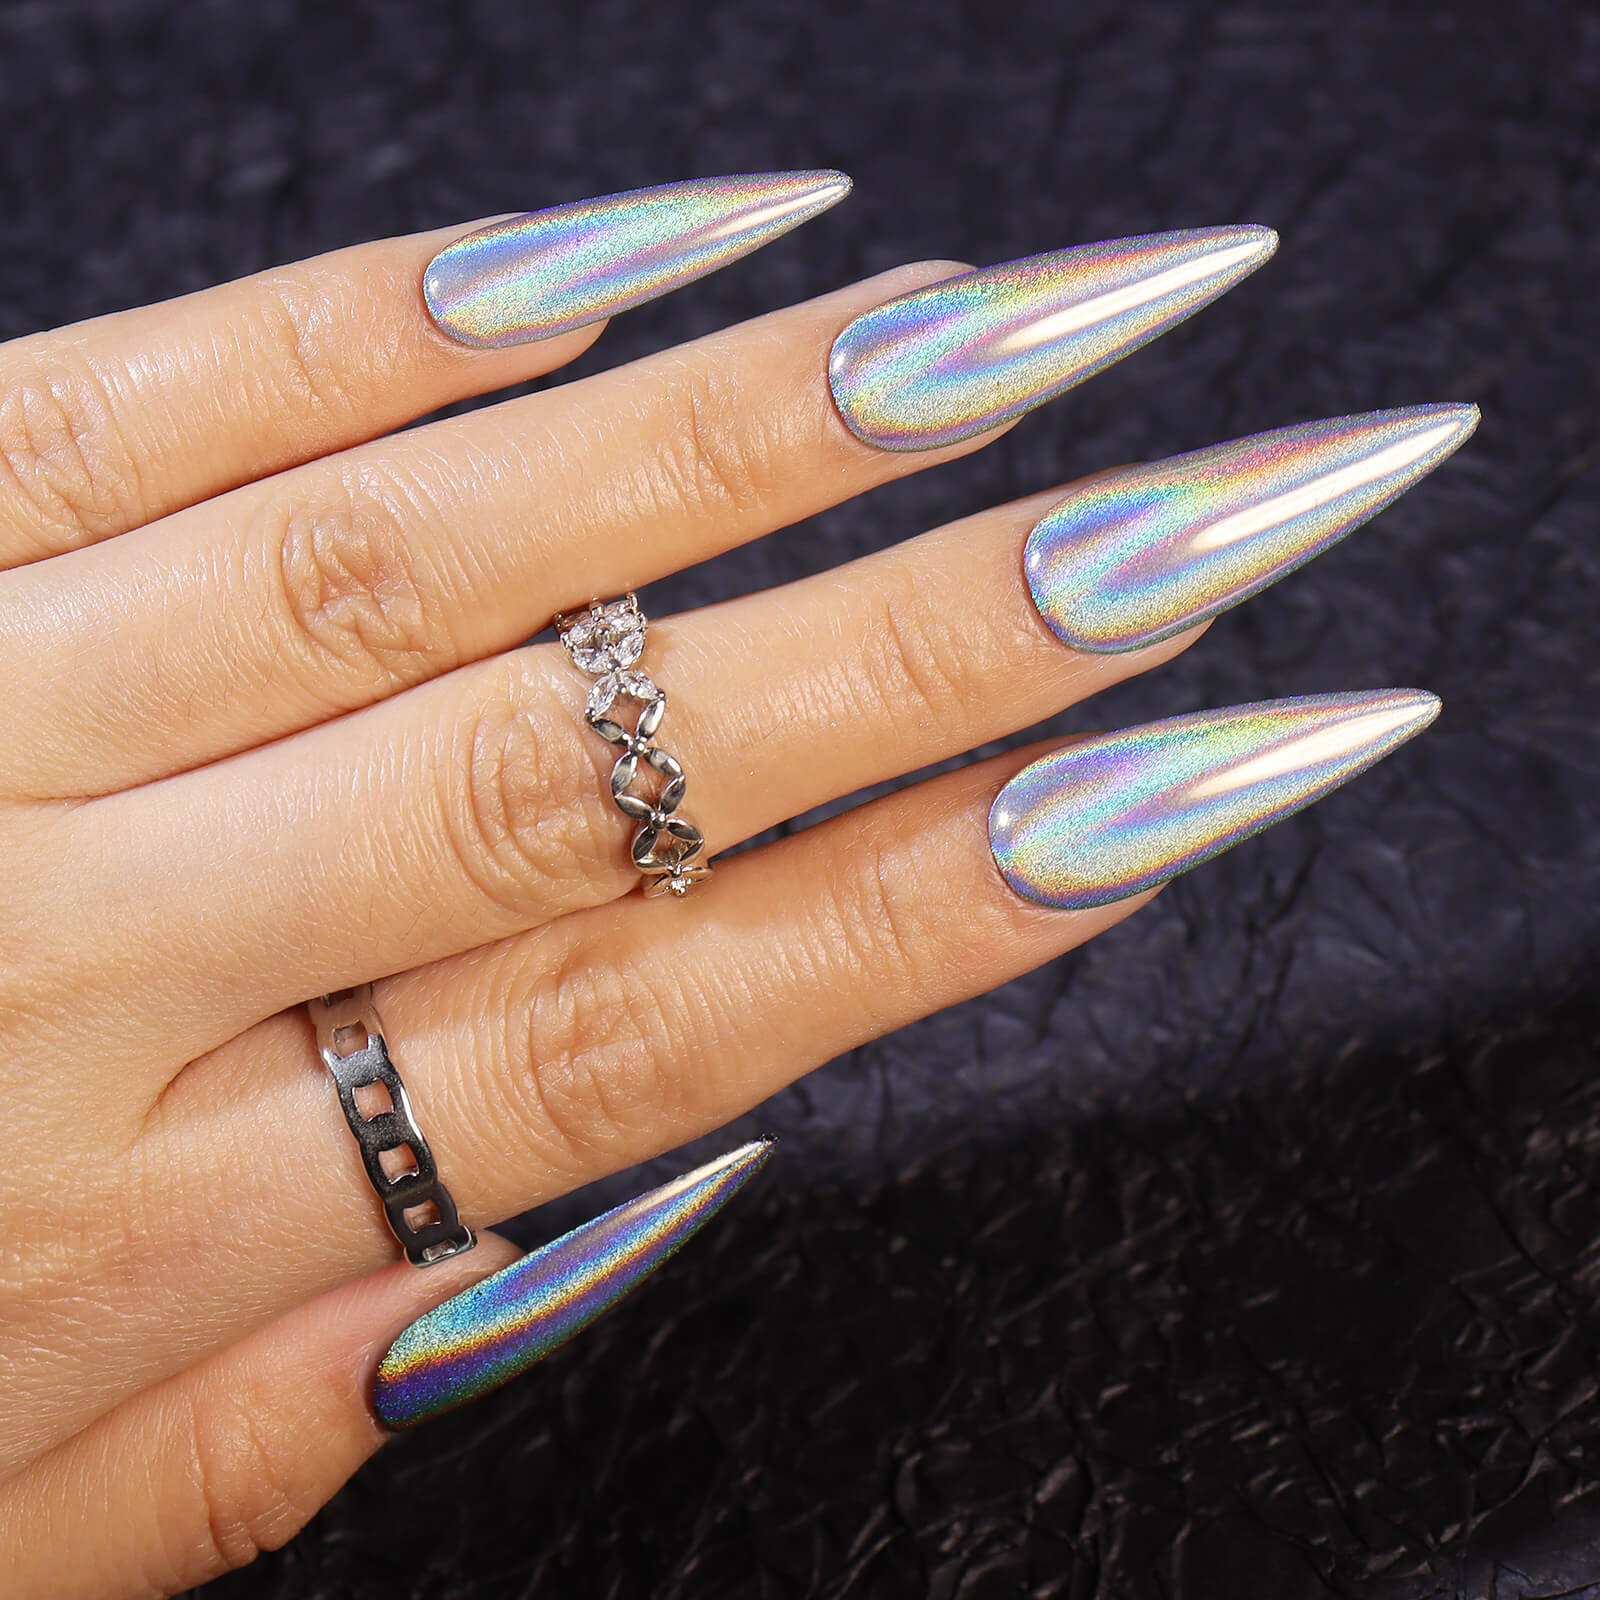 Holographic nails. I feel like a fairy unicorn. : r/RedditLaqueristas